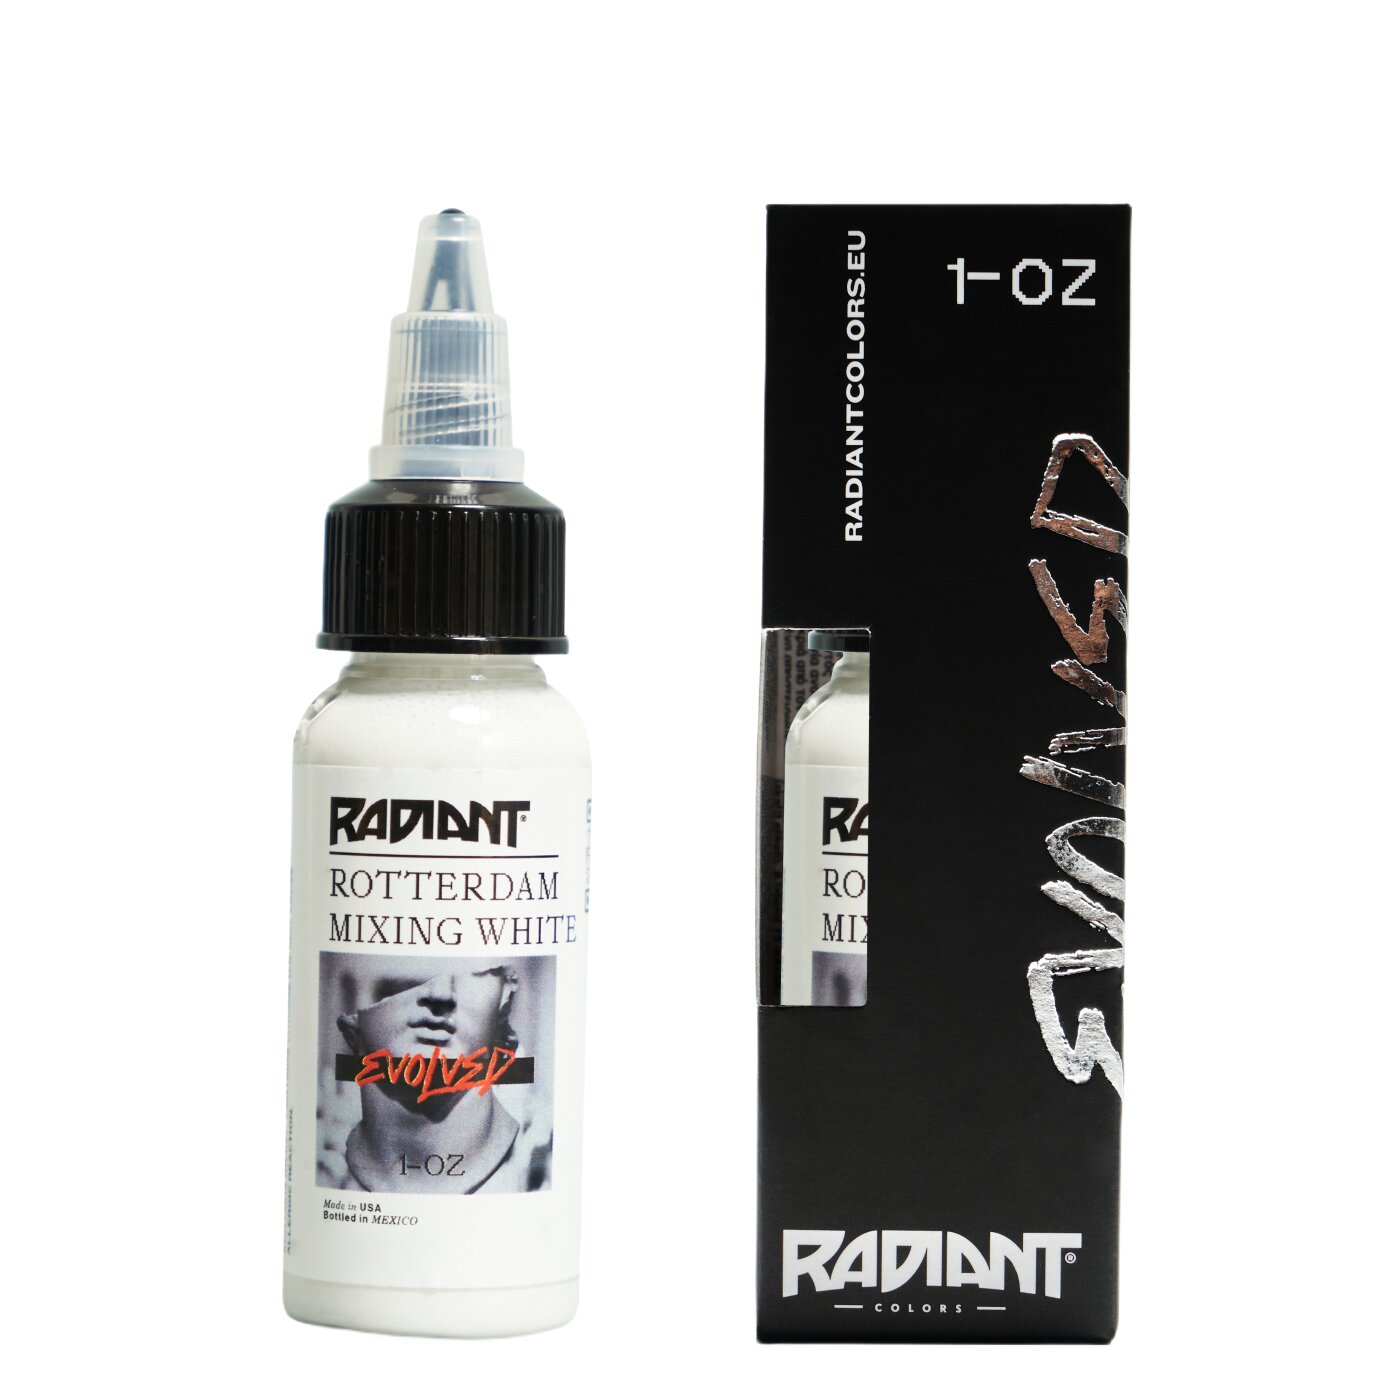 radiant evolved rotterdam mixing white 22 prodak